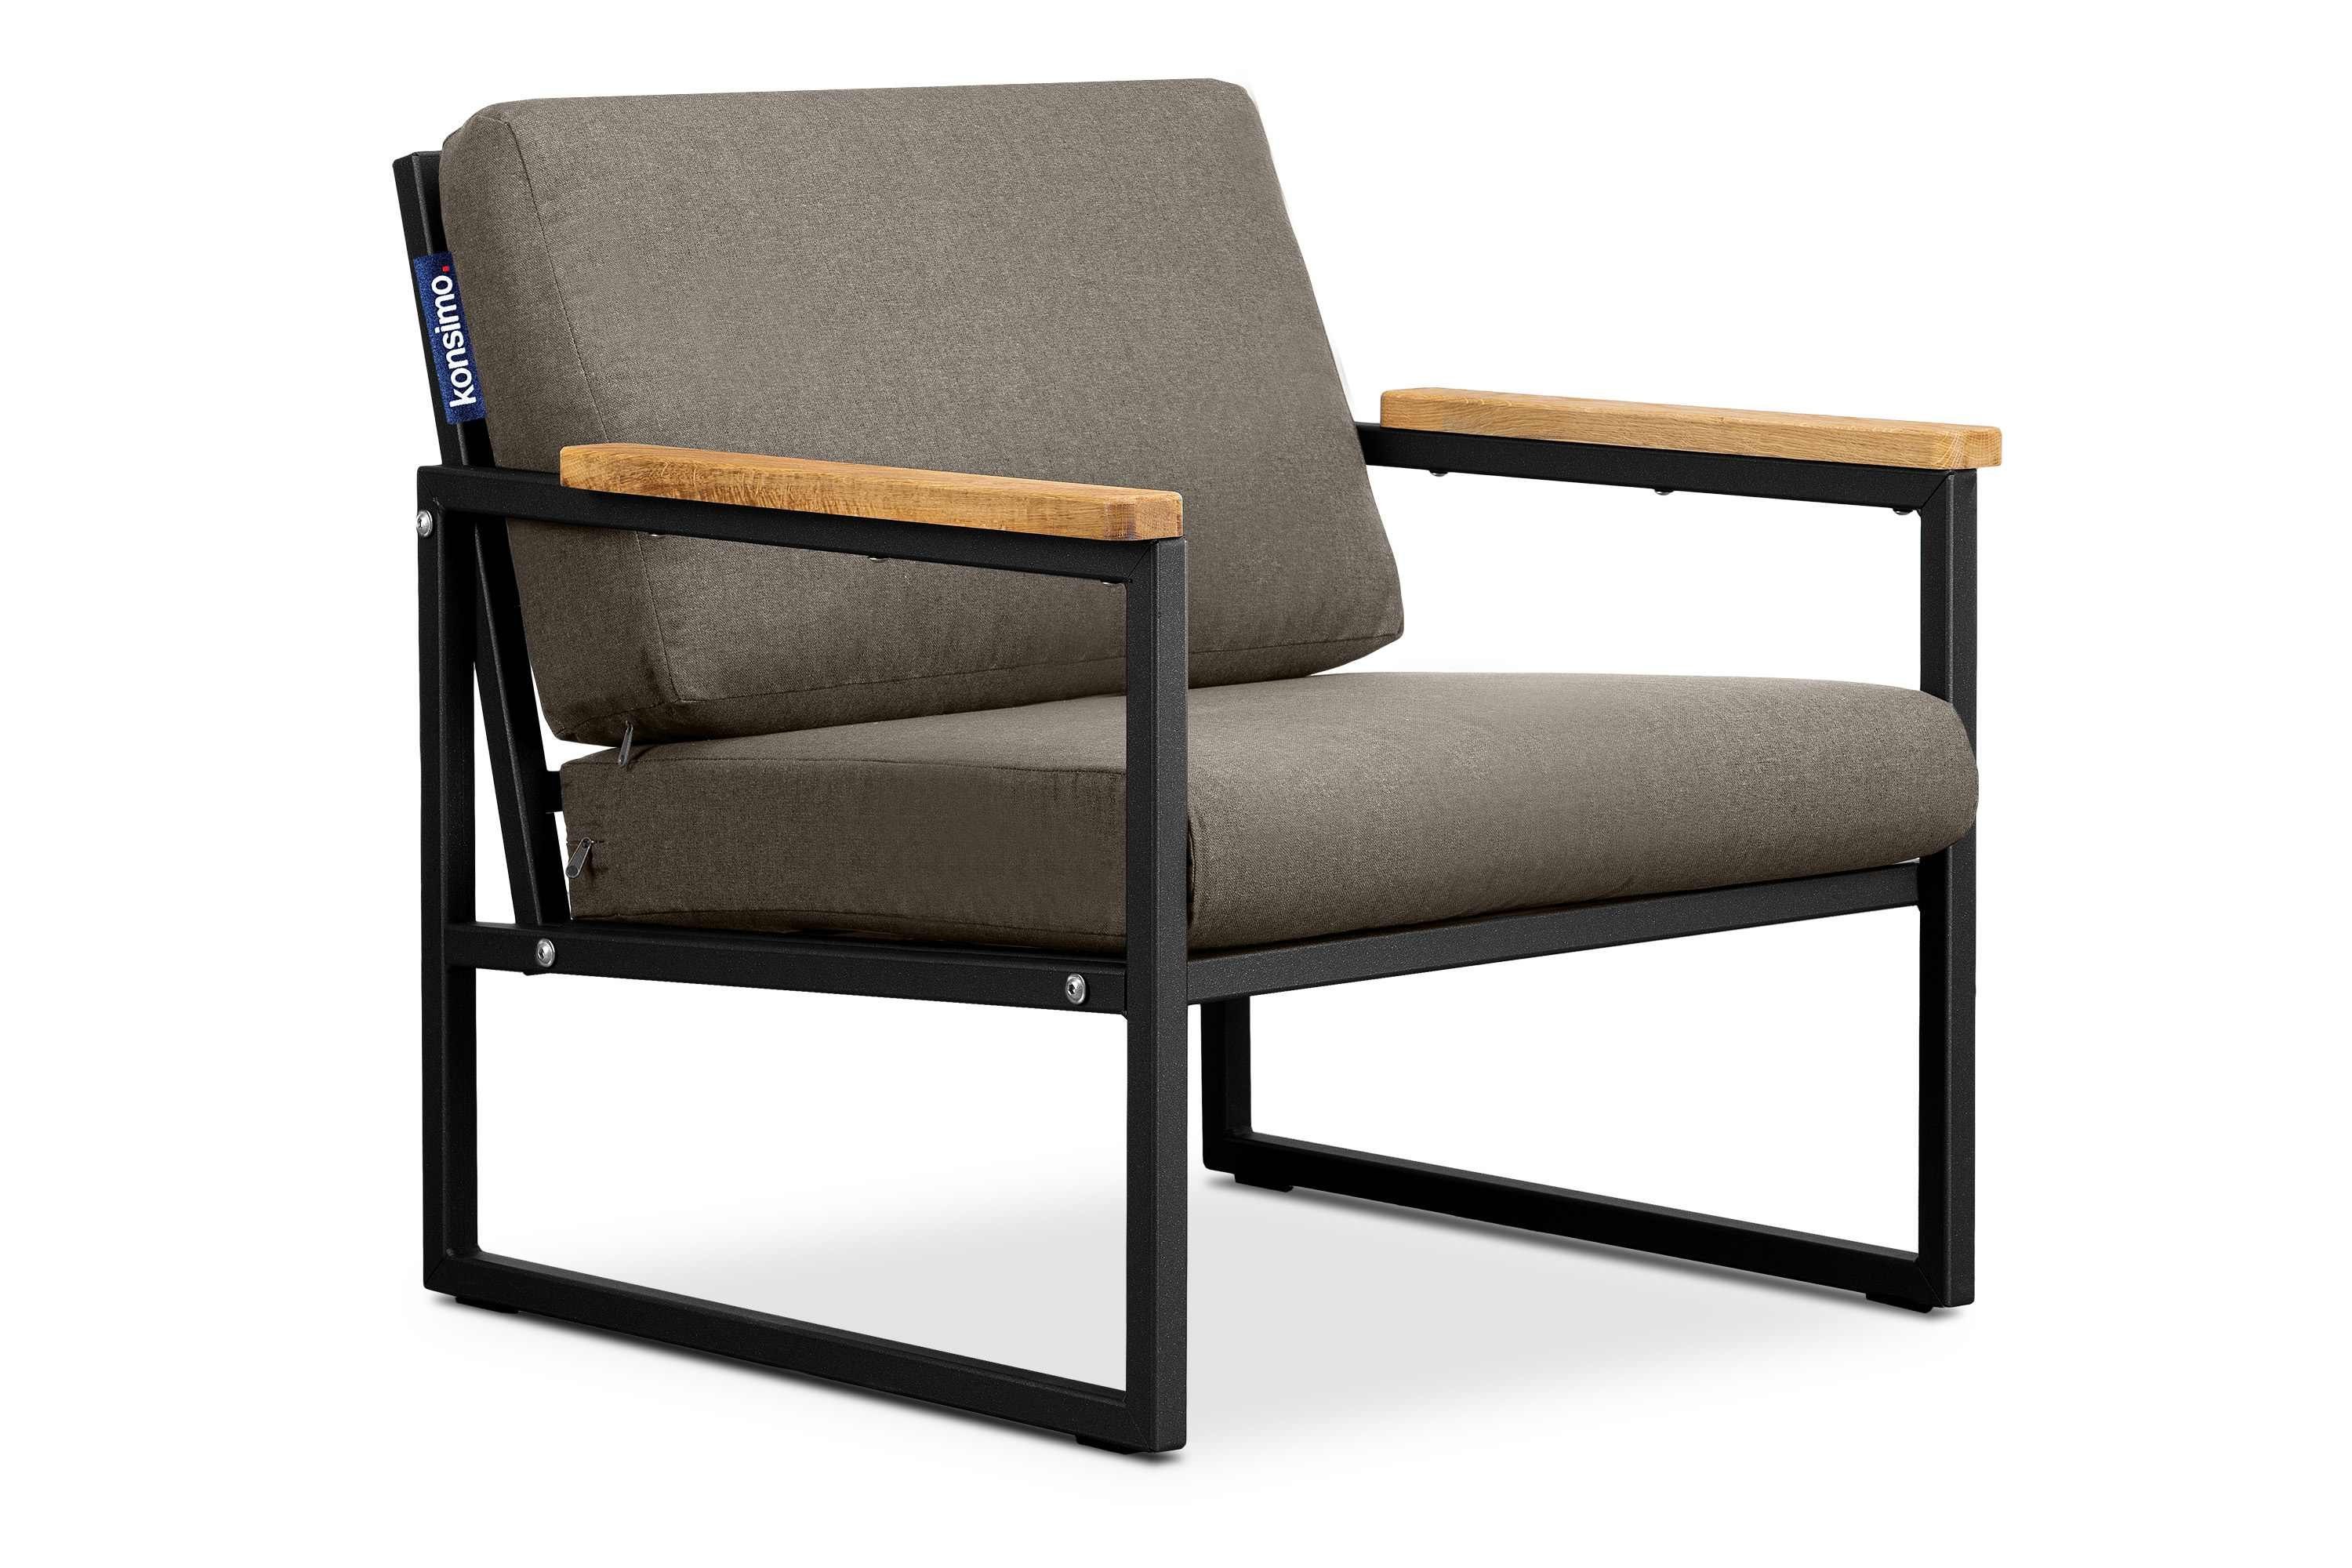 Konsimo Gartensessel TRIBO Garten-Sessel (1x Handläufe Made wasserabweisend, geölter Eiche, schwarz/beige aus UV-Beständigkeit, und Europe Sessel), schmutz- in